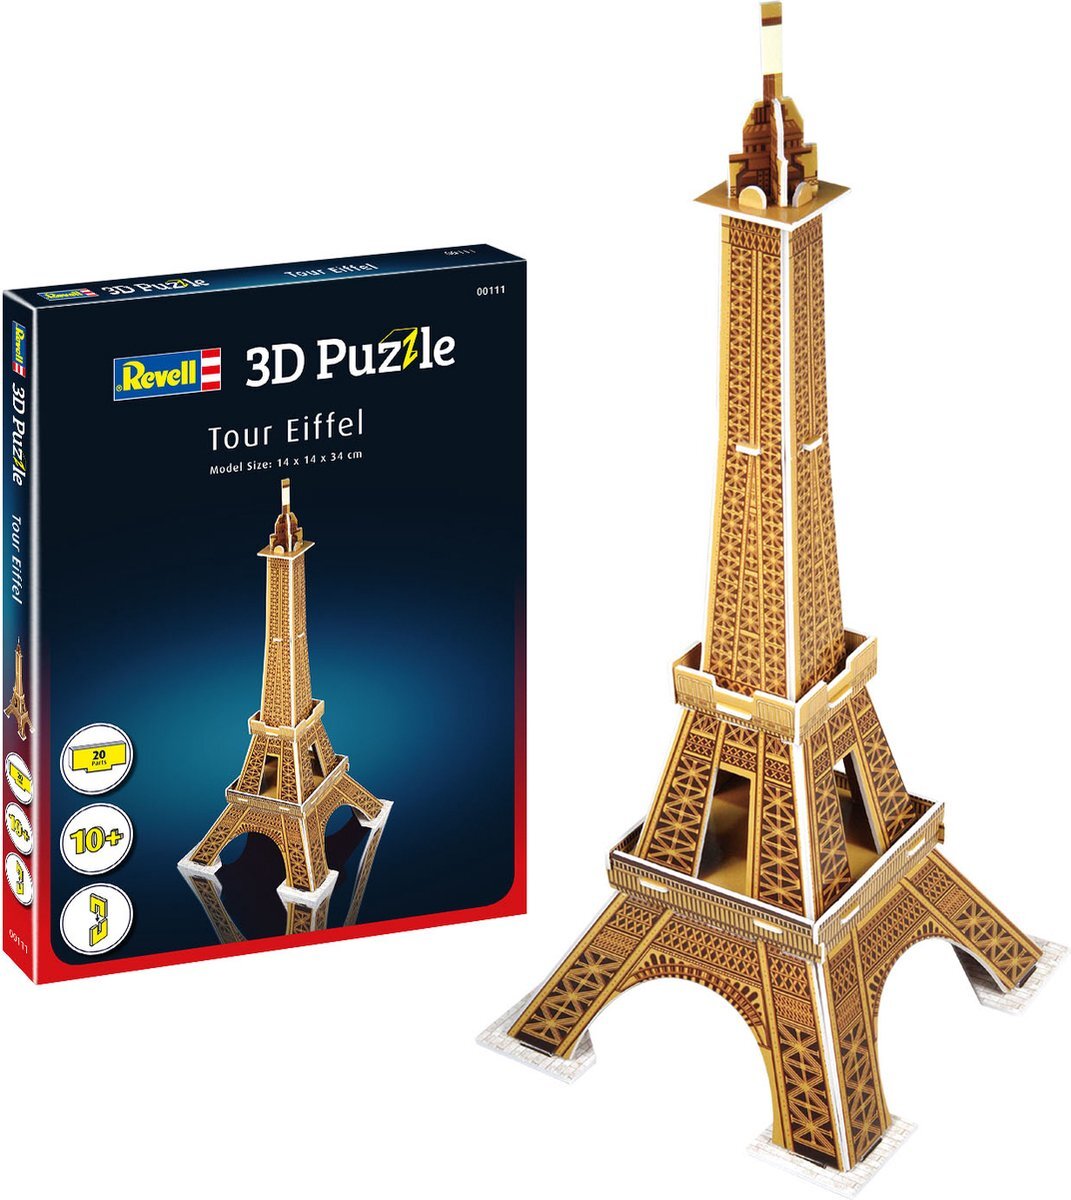 Revell 3D Puzzle 00111 Eiffel Tower 3D Puzzel